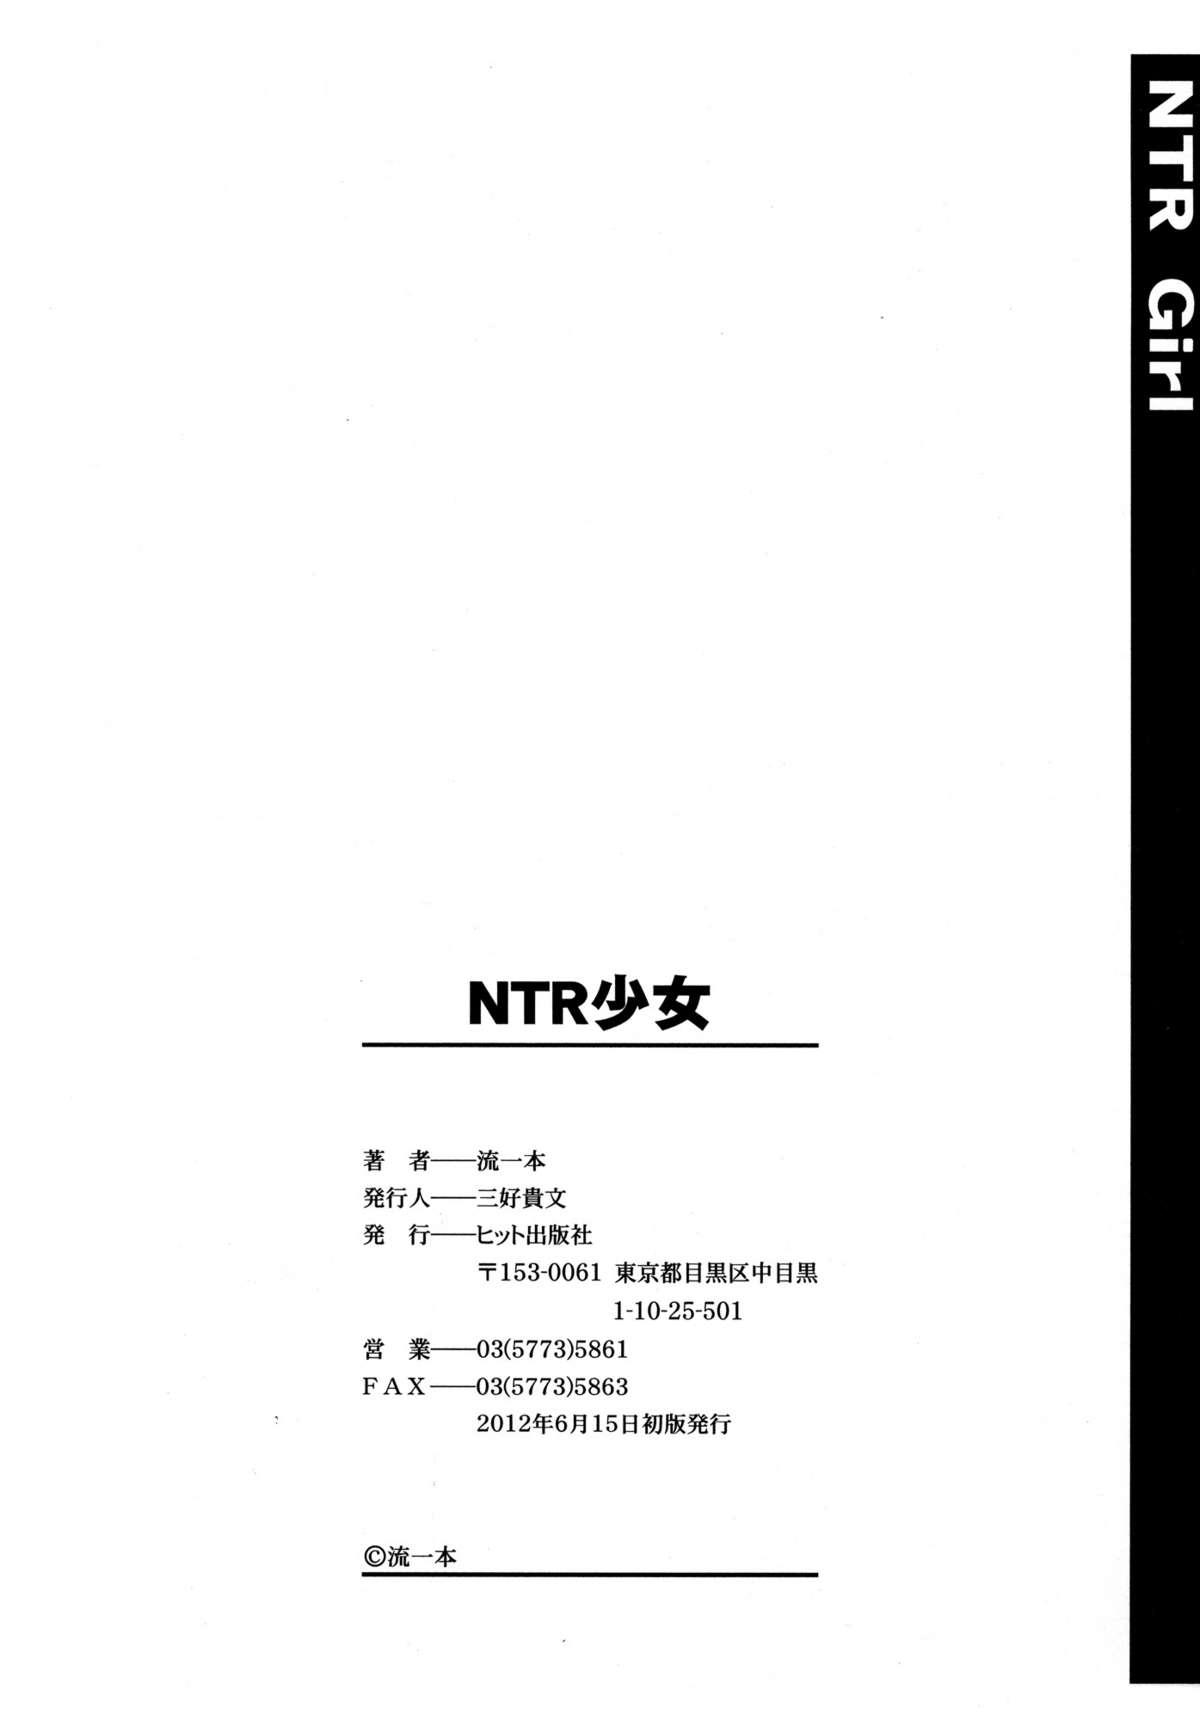 NTR Shoujo - NTR Girl 205